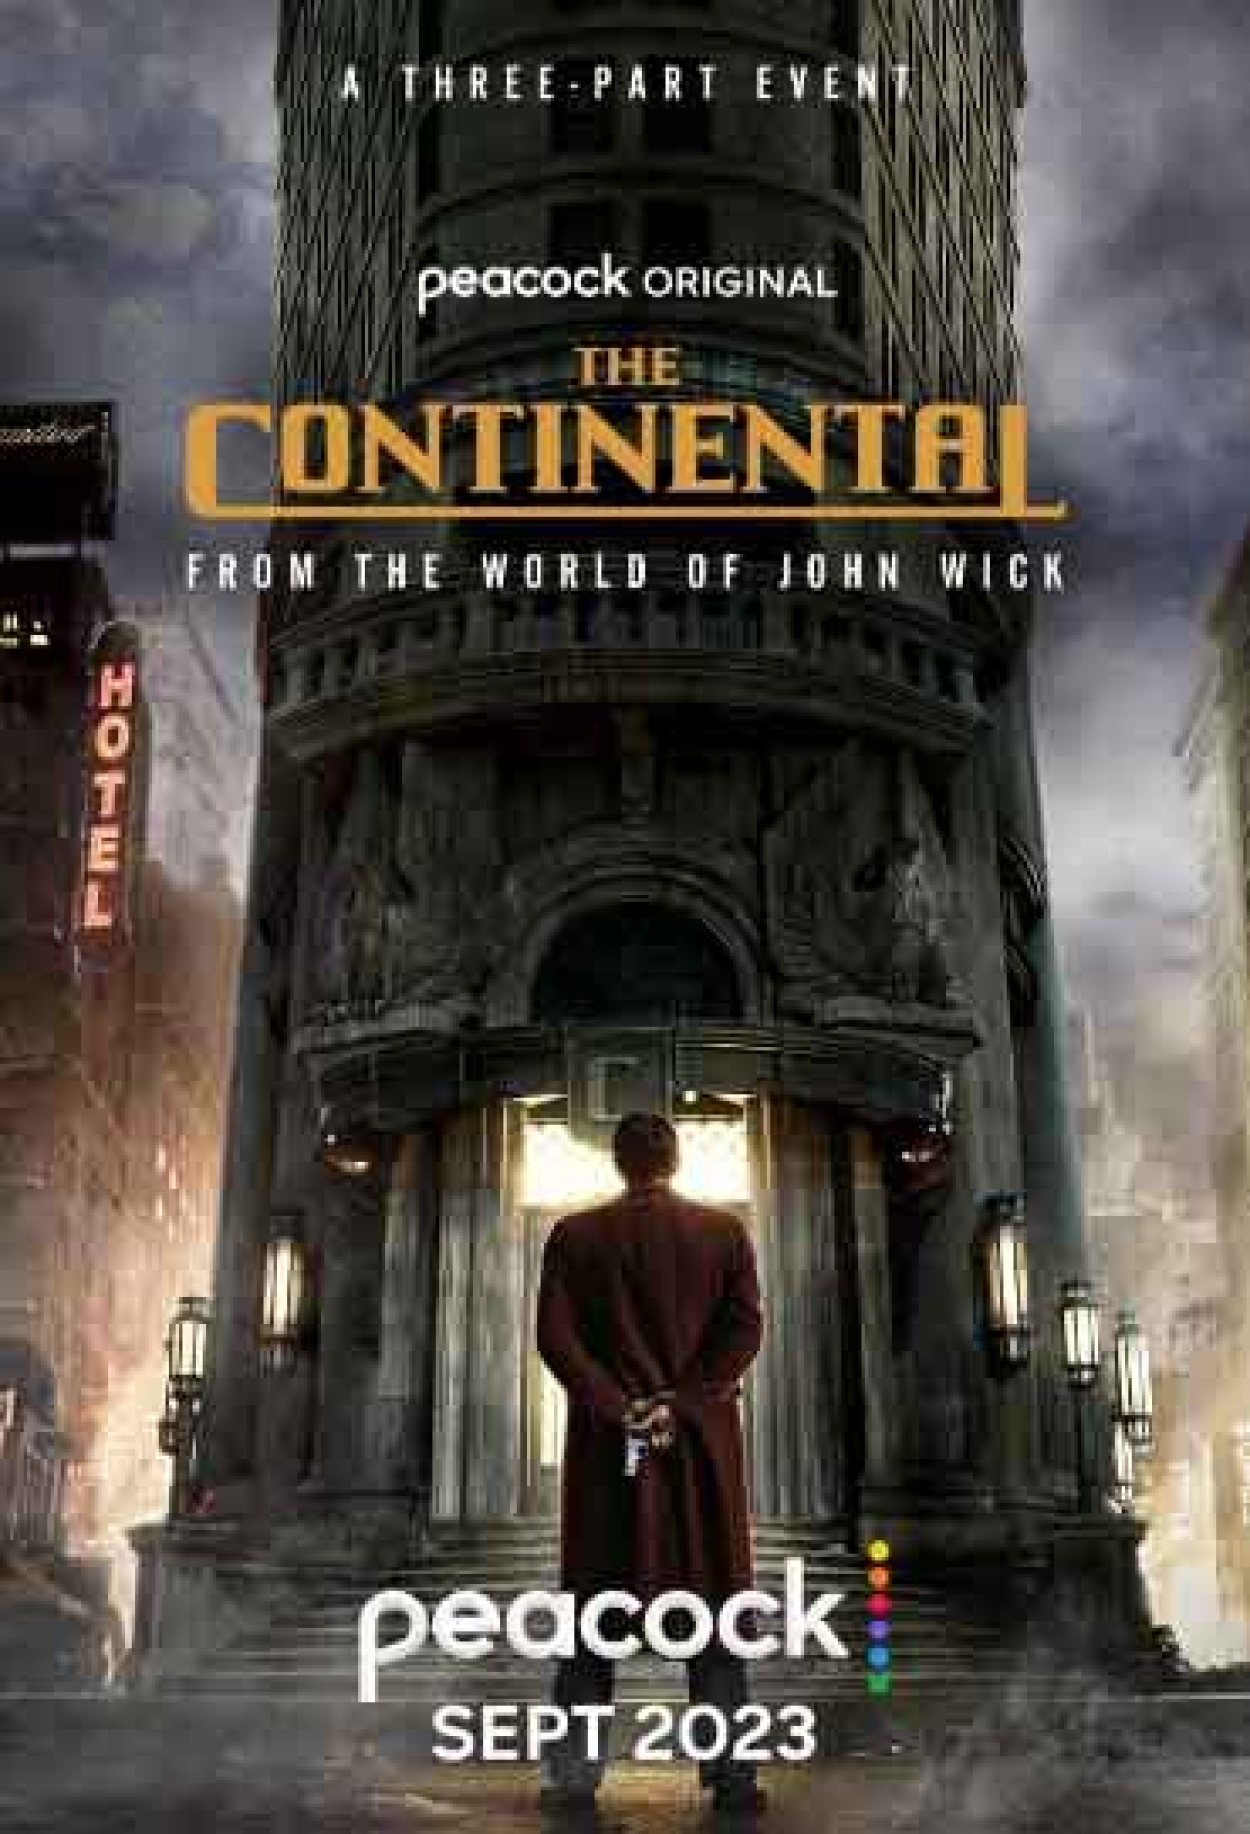 O Continental: veja sinopse, elenco e trailer da série de John Wick